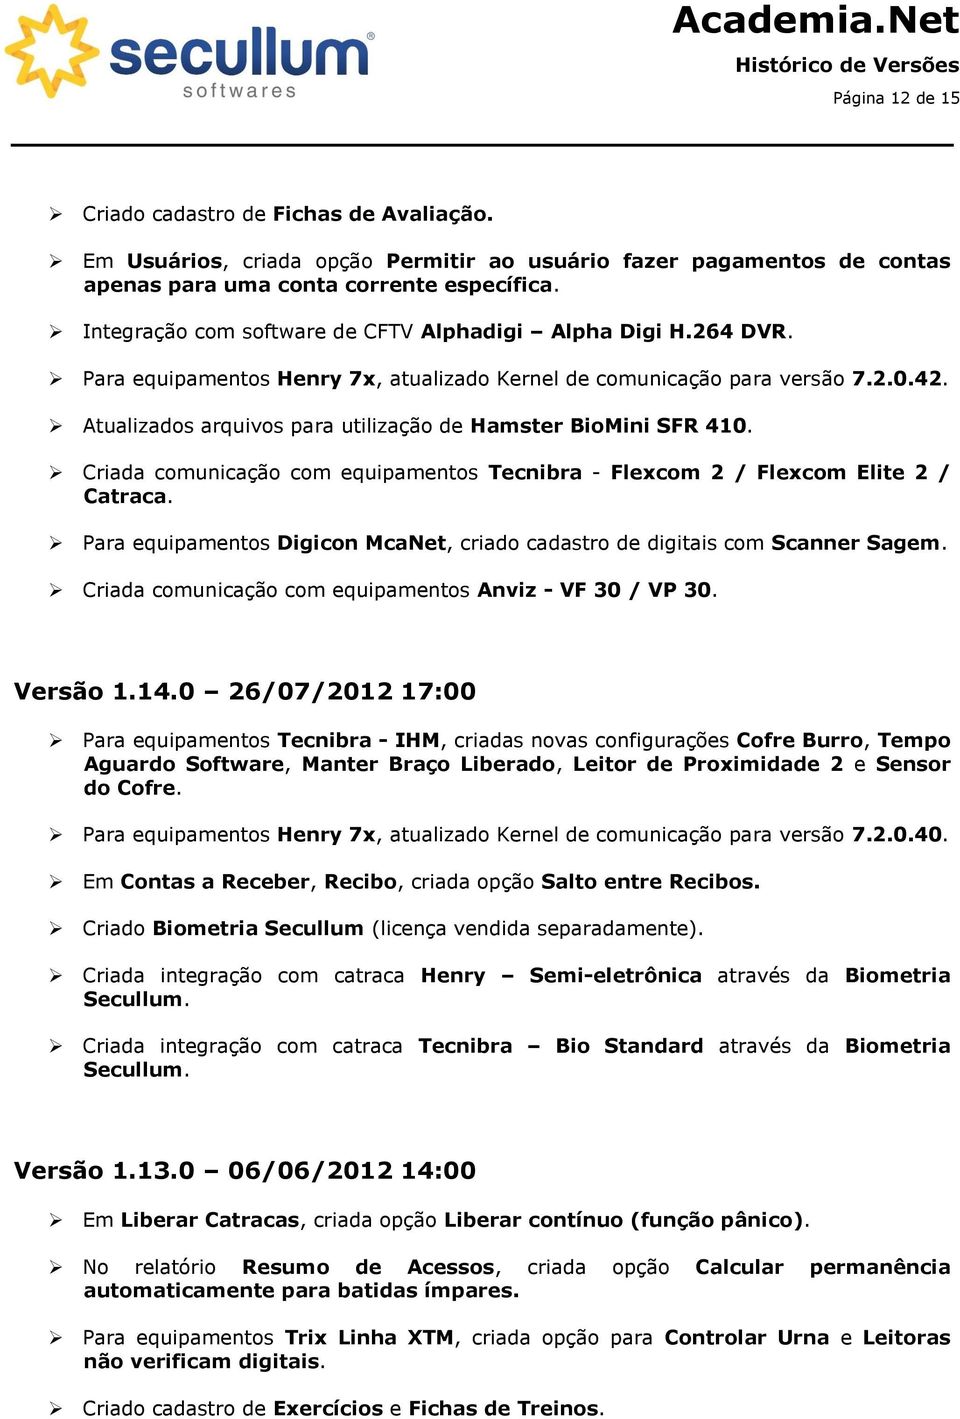 Atualizados arquivos para utilização de Hamster BioMini SFR 410. Criada comunicação com equipamentos Tecnibra - Flexcom 2 / Flexcom Elite 2 / Catraca.